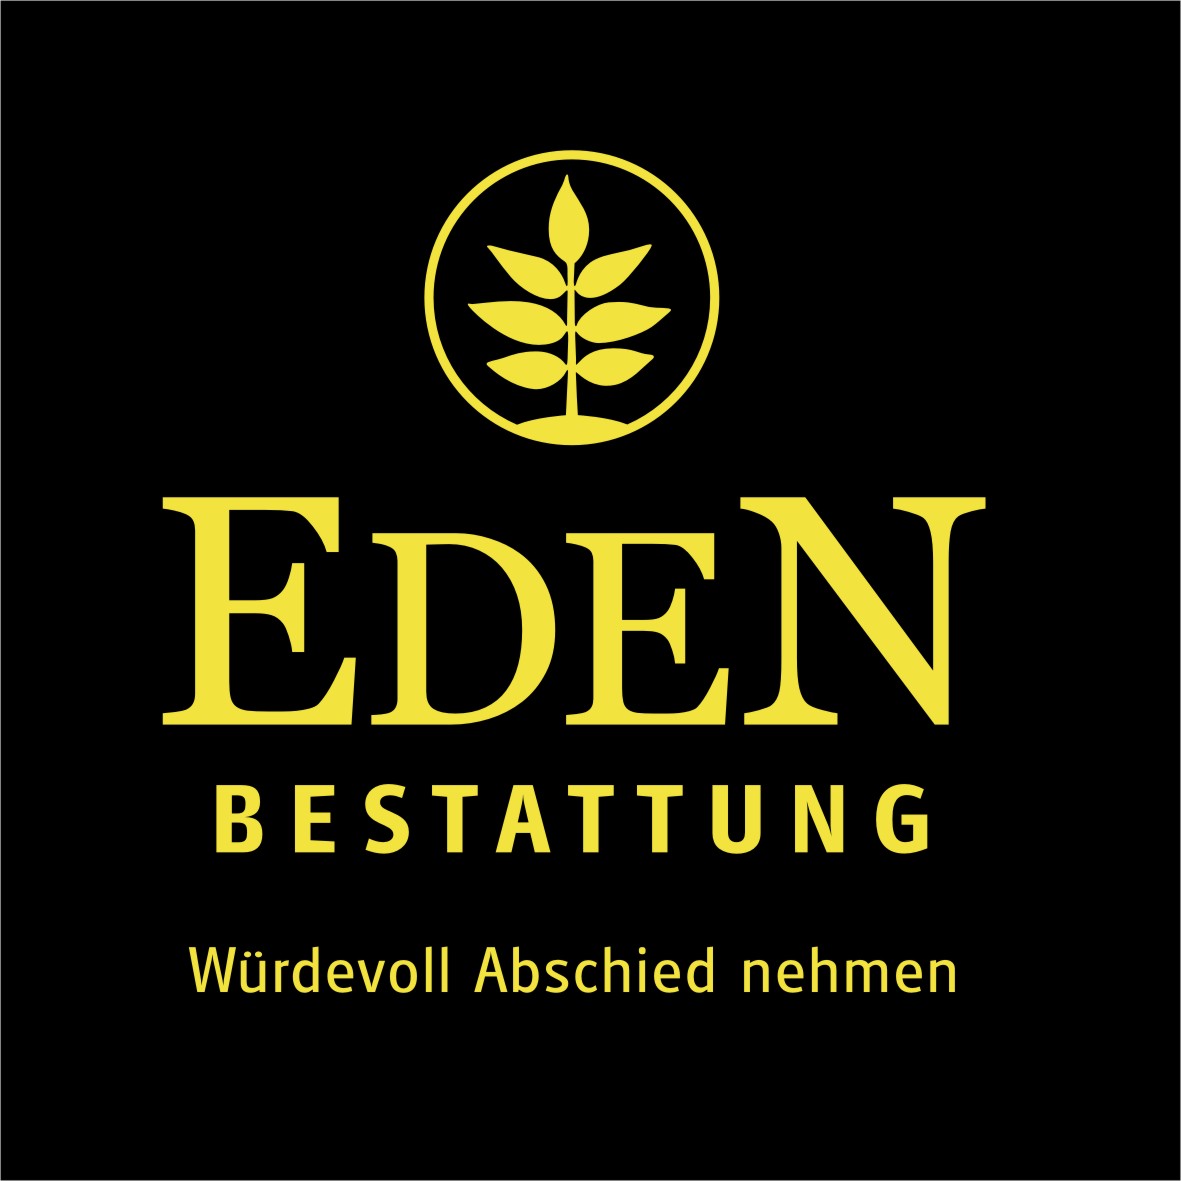 Bestattung Eden Weiz Logo